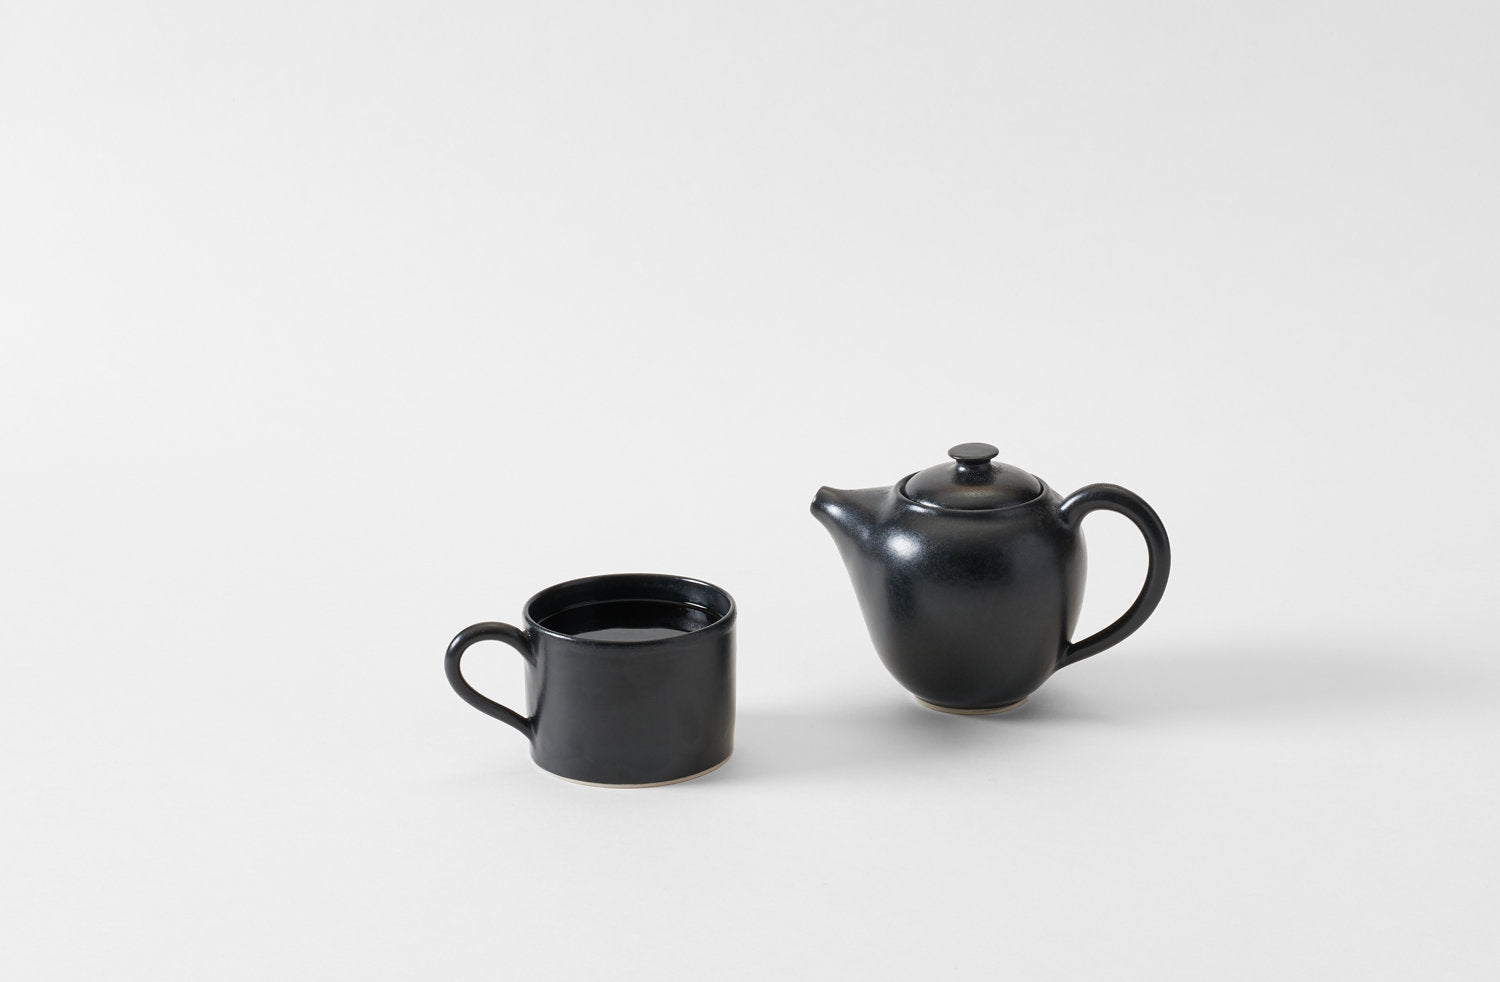 http://marchsf.com/cdn/shop/products/christiane-perrochon-small-black-teapot-b.jpg?v=1588029925